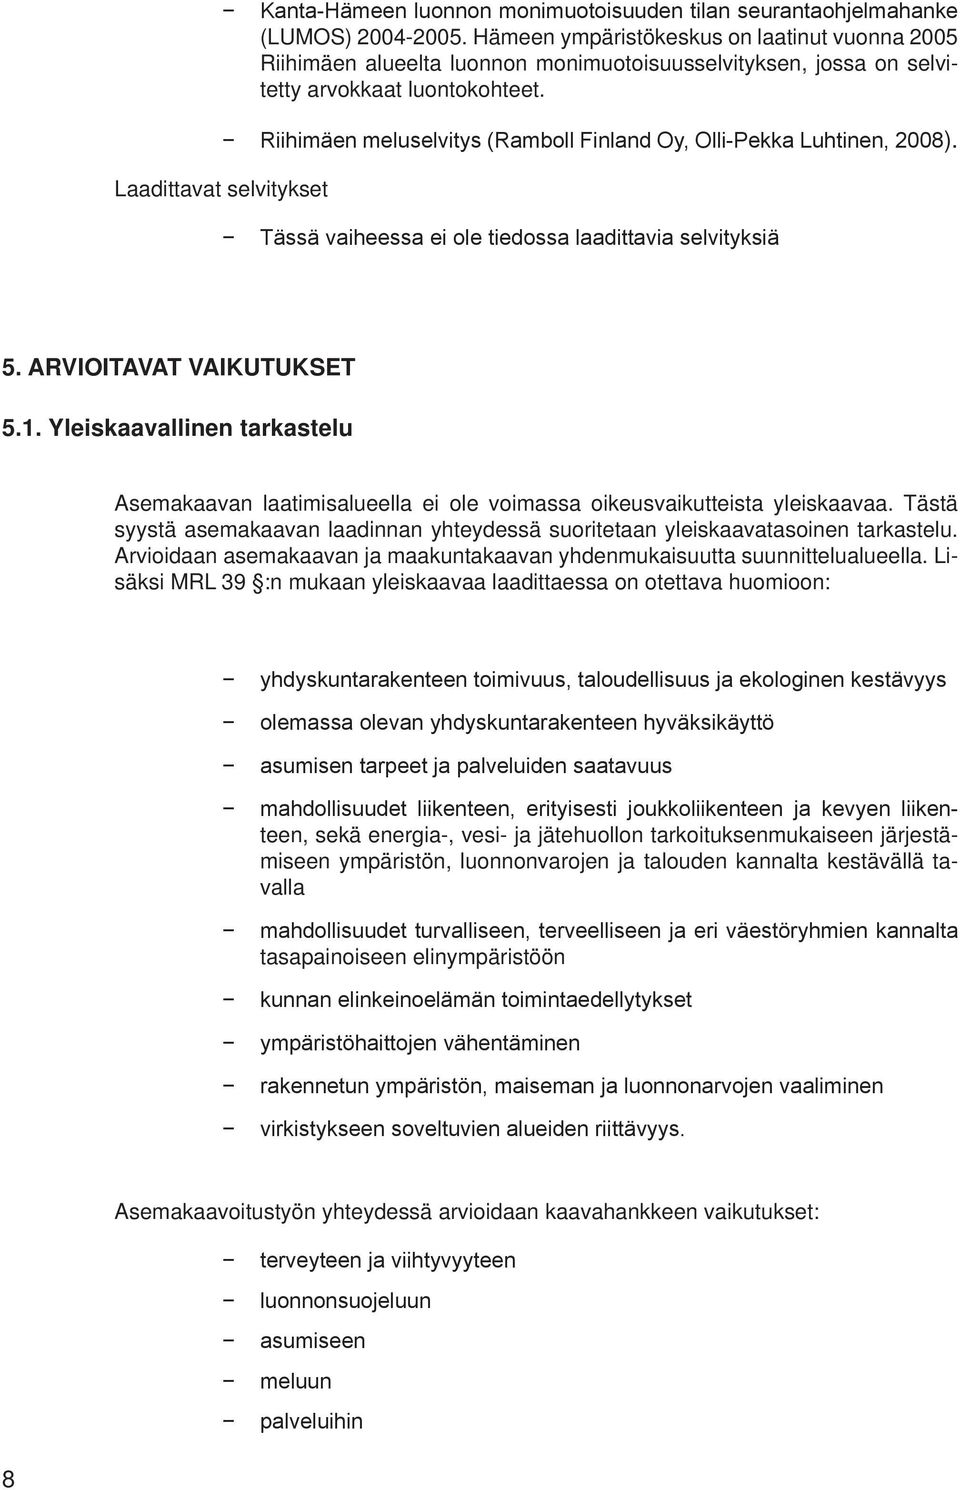 Laadittavat selvitykset Riihimäen meluselvitys (Ramboll Finland Oy, Olli-Pekka Luhtinen, 2008). Tässä vaiheessa ei ole tiedossa laadittavia selvityksiä 5. ARVIOITAVAT VAIKUTUKSET 5.1.